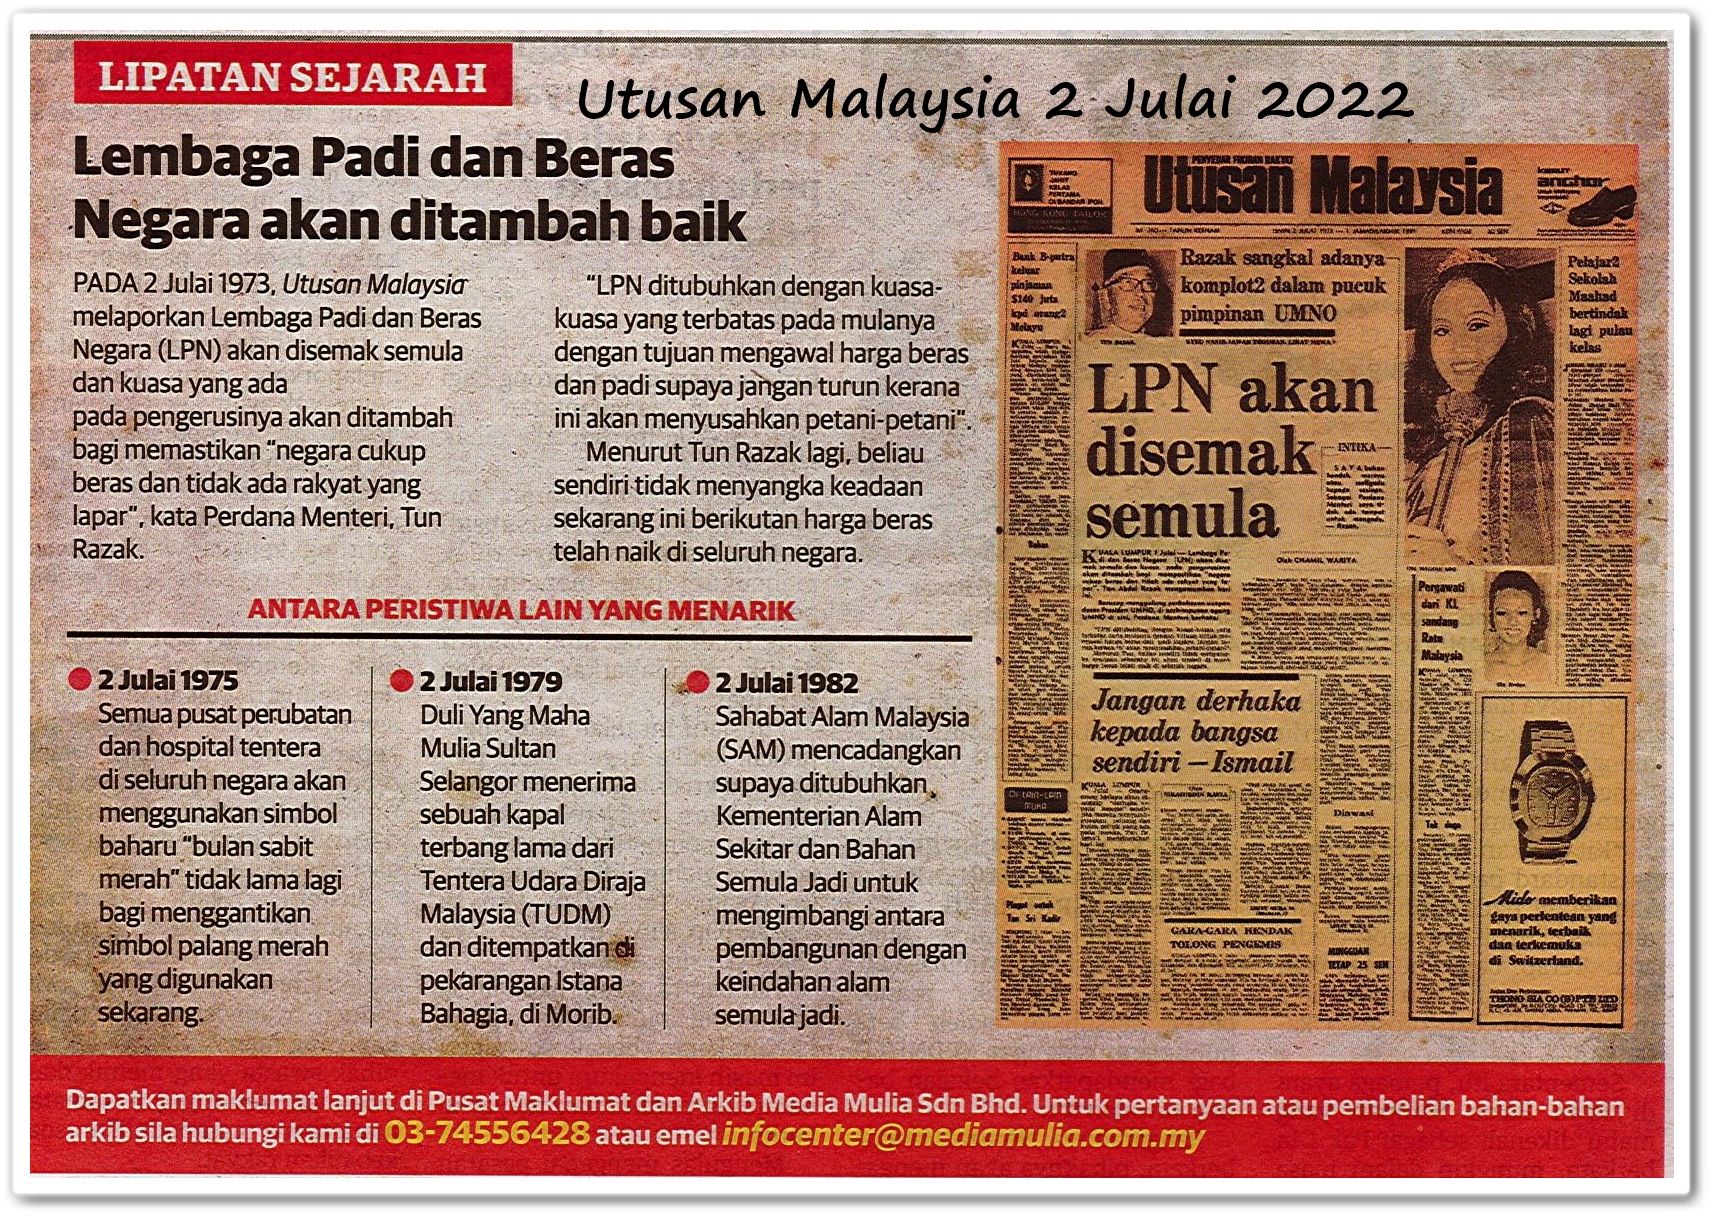 Lipatan sejarah 2 Julai - Keratan akhbar Utusan Malaysia 2 Julai 2022